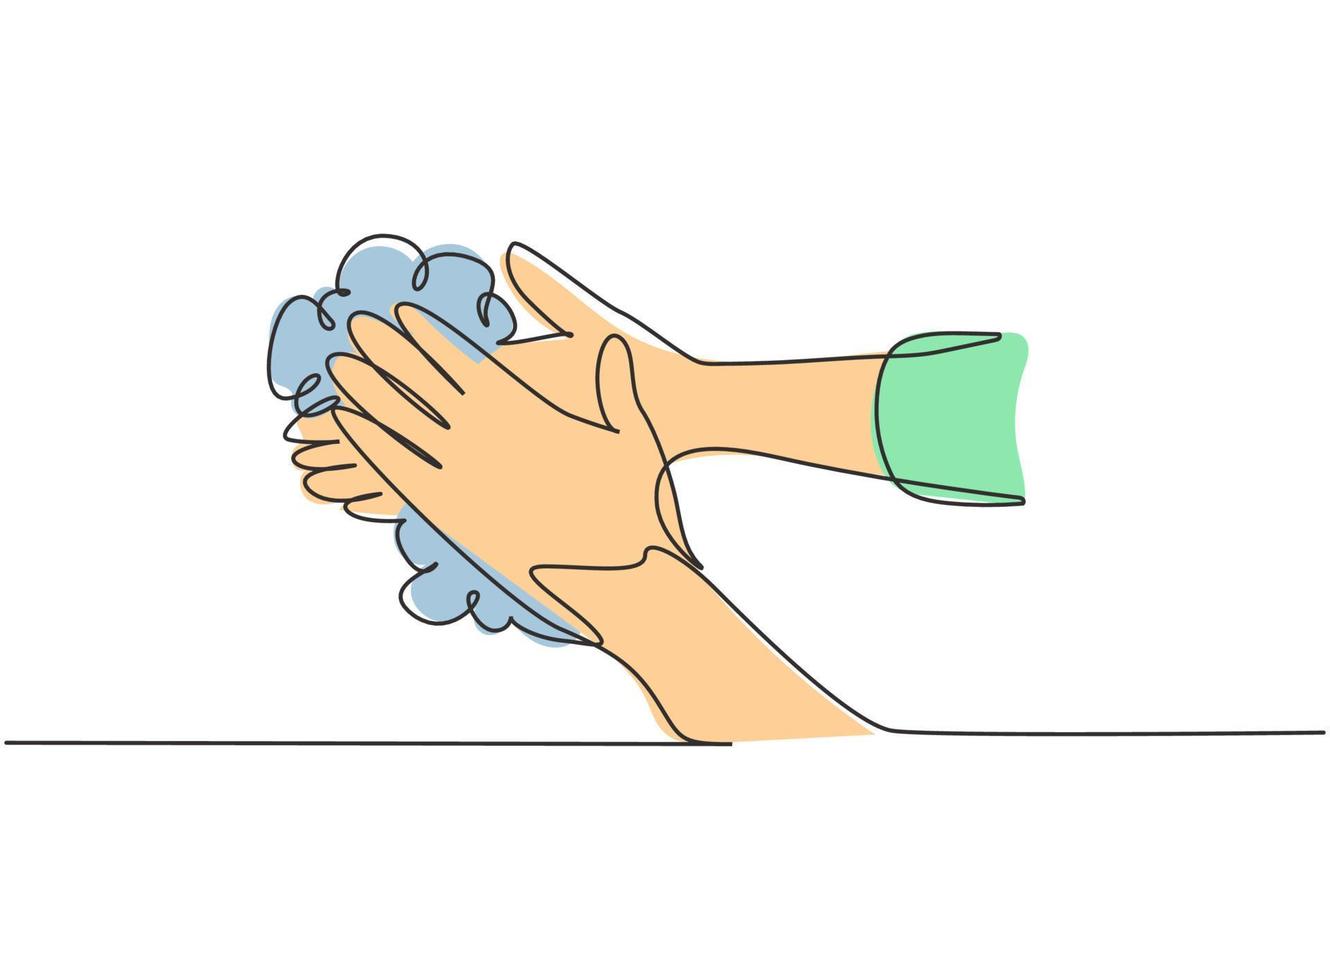 kontinuerlig en linje som ritar tolv steg handtvätt genom att gnugga handflatorna med tvål och rinnande vatten. tidigt förebyggande av corona -viruset. enkel linje rita design vektor grafisk illustration.